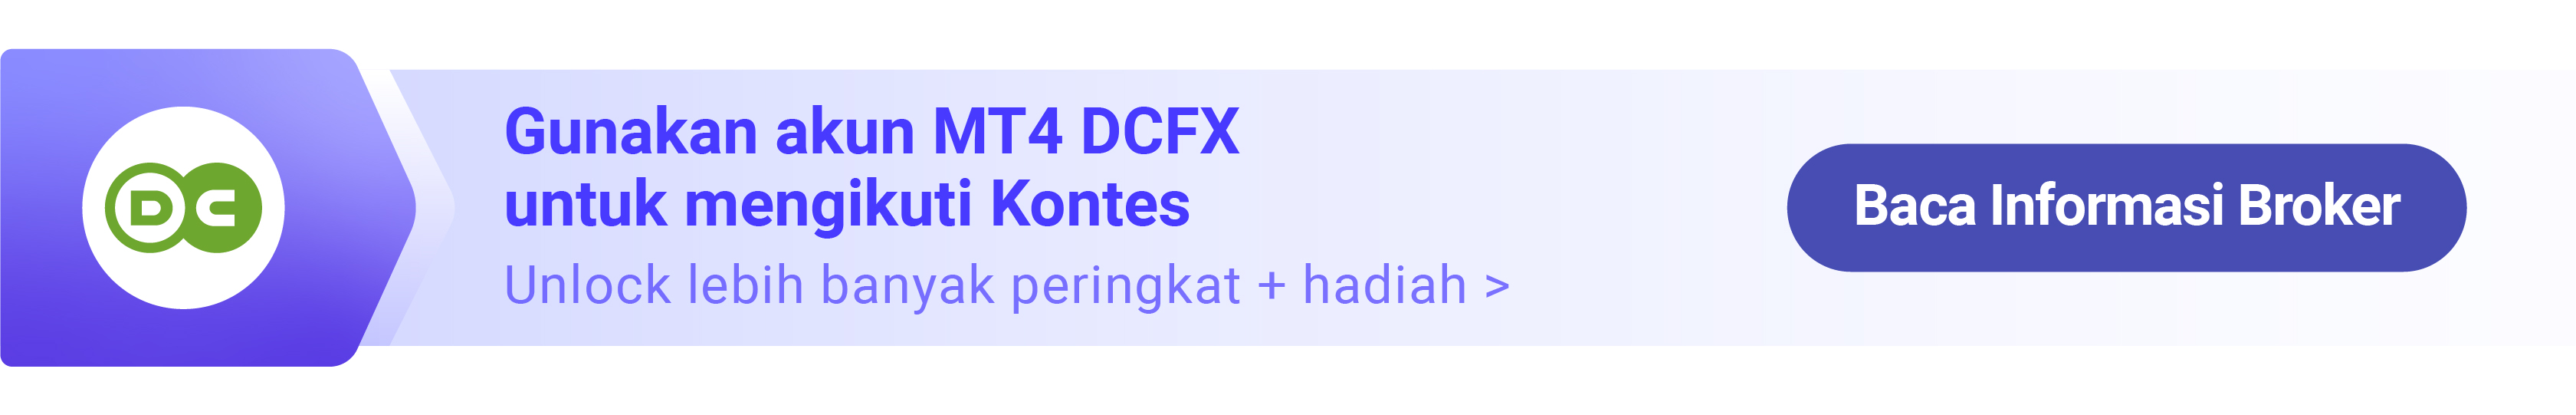 DCFX - Special Angpao